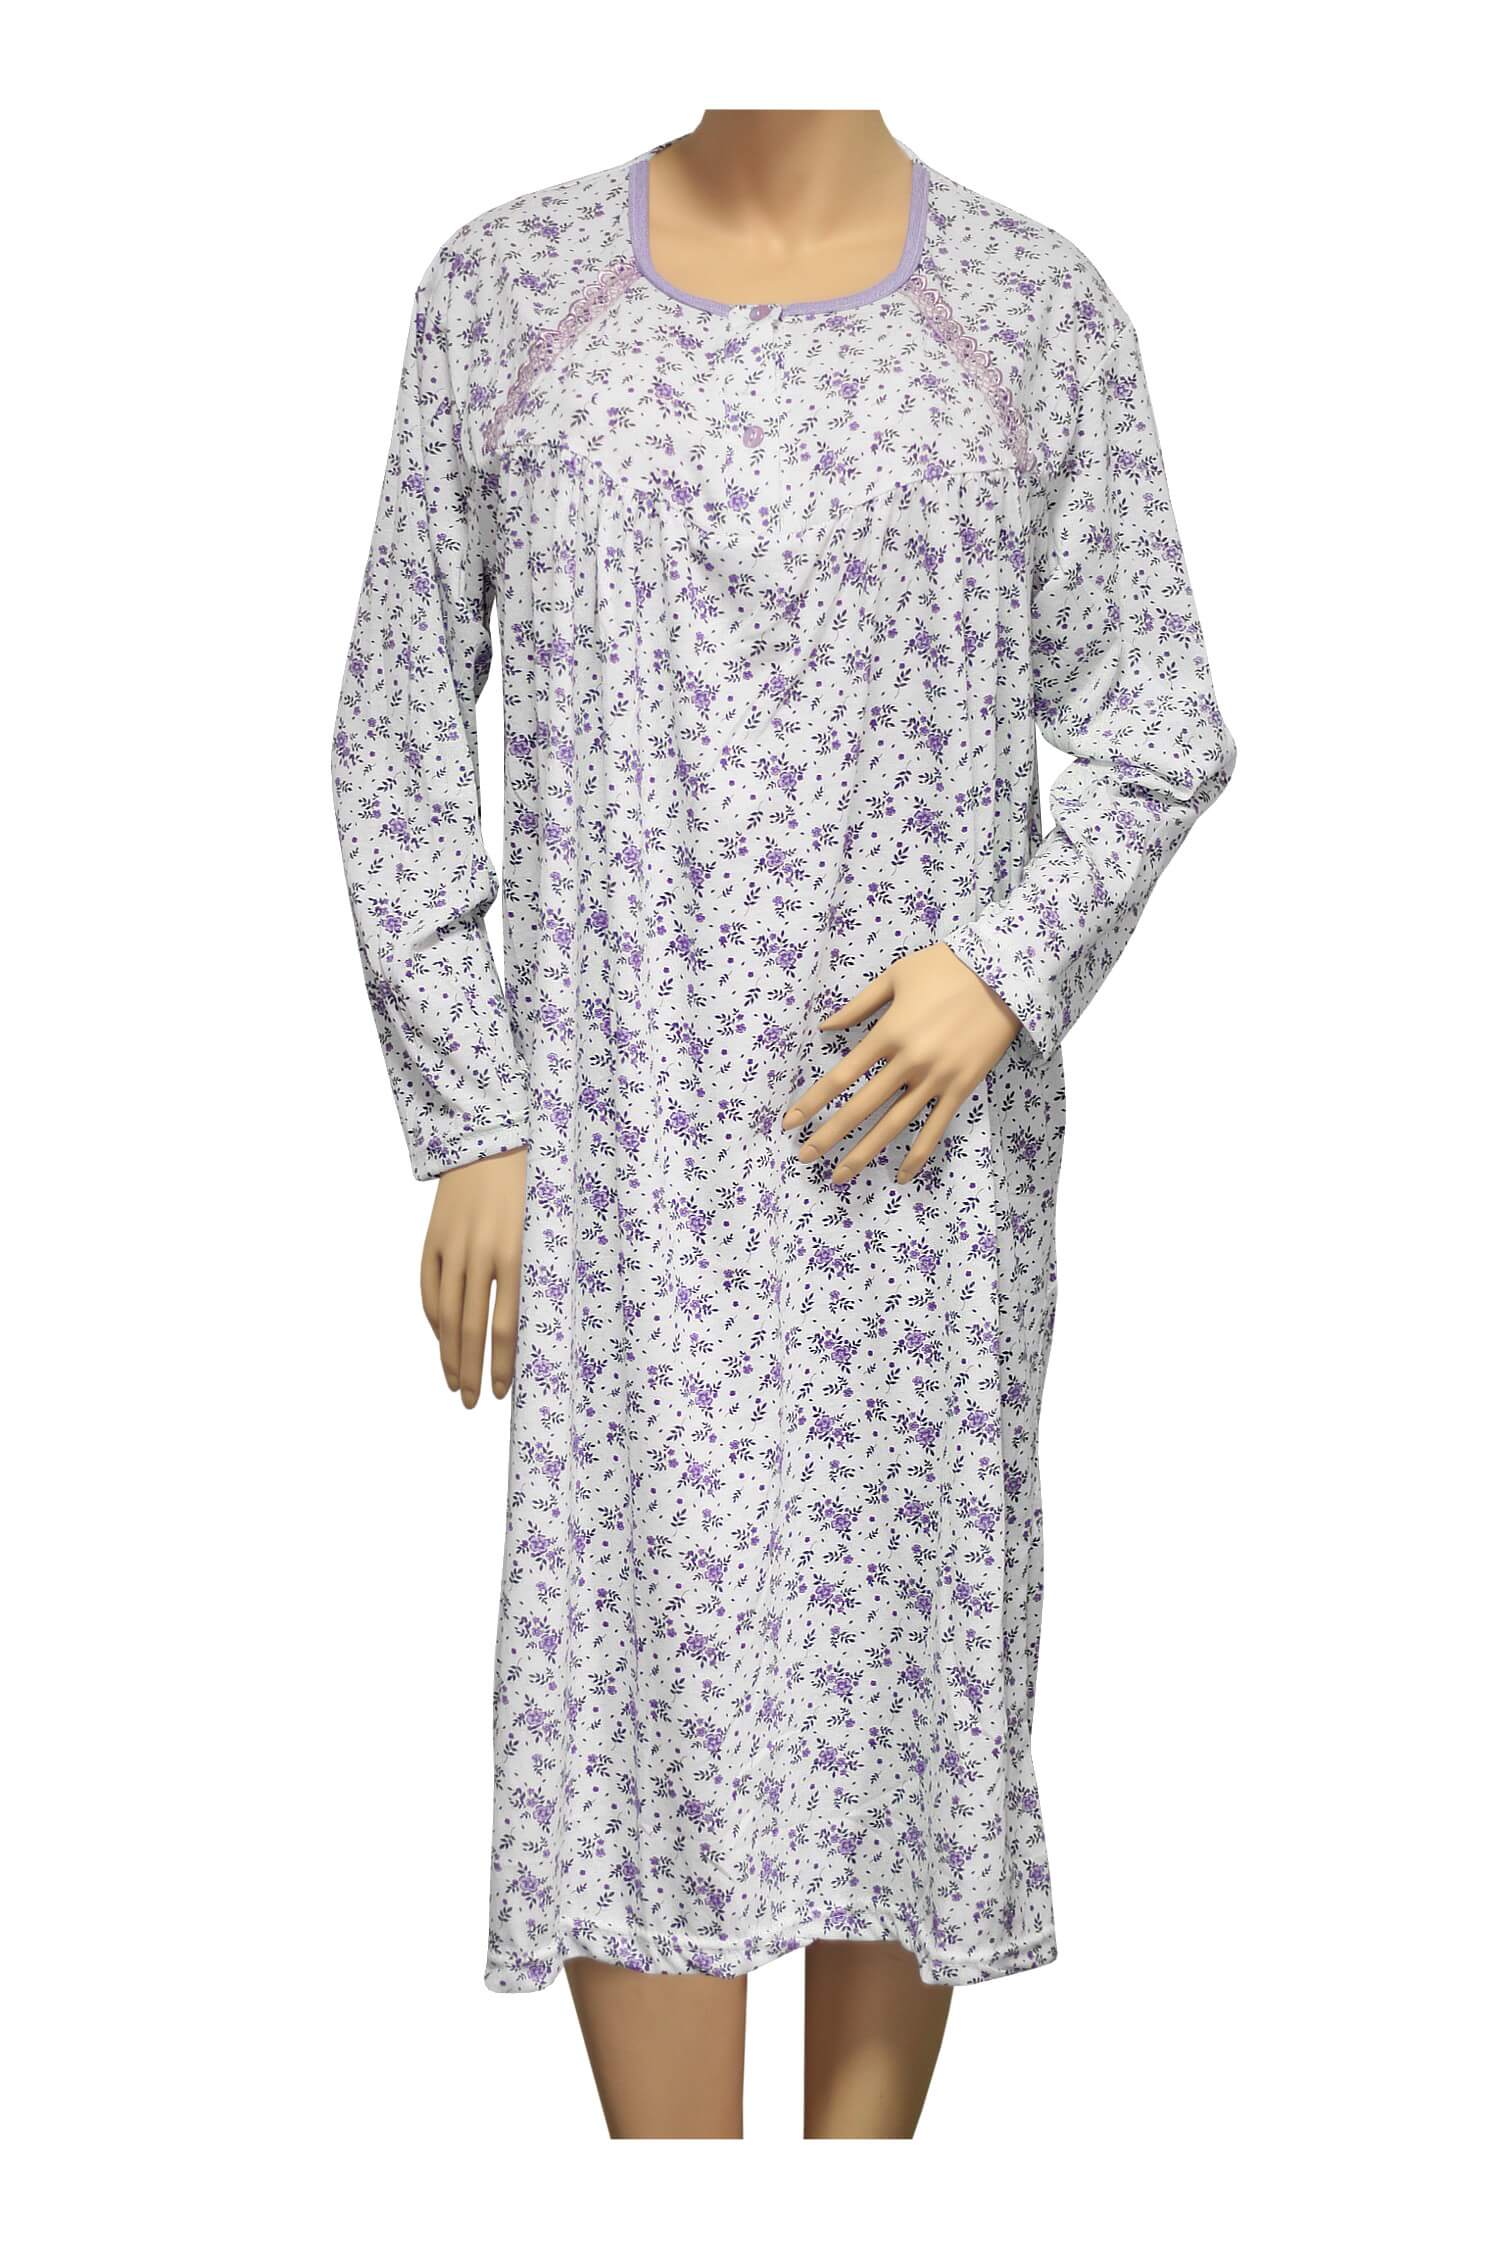 Karina dámská noční košile 1008 L fialová